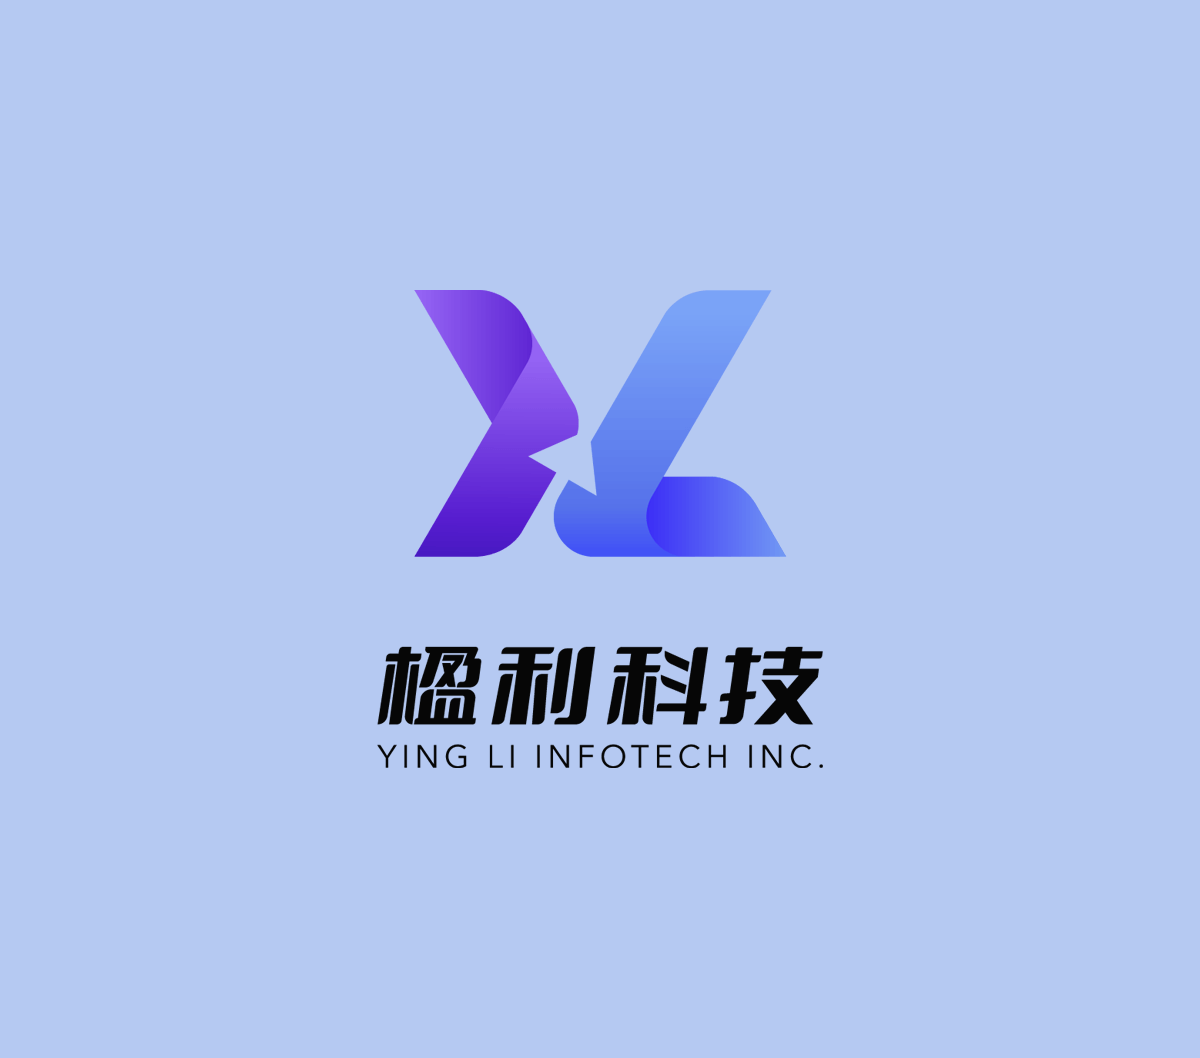 YL Tech Logo Design